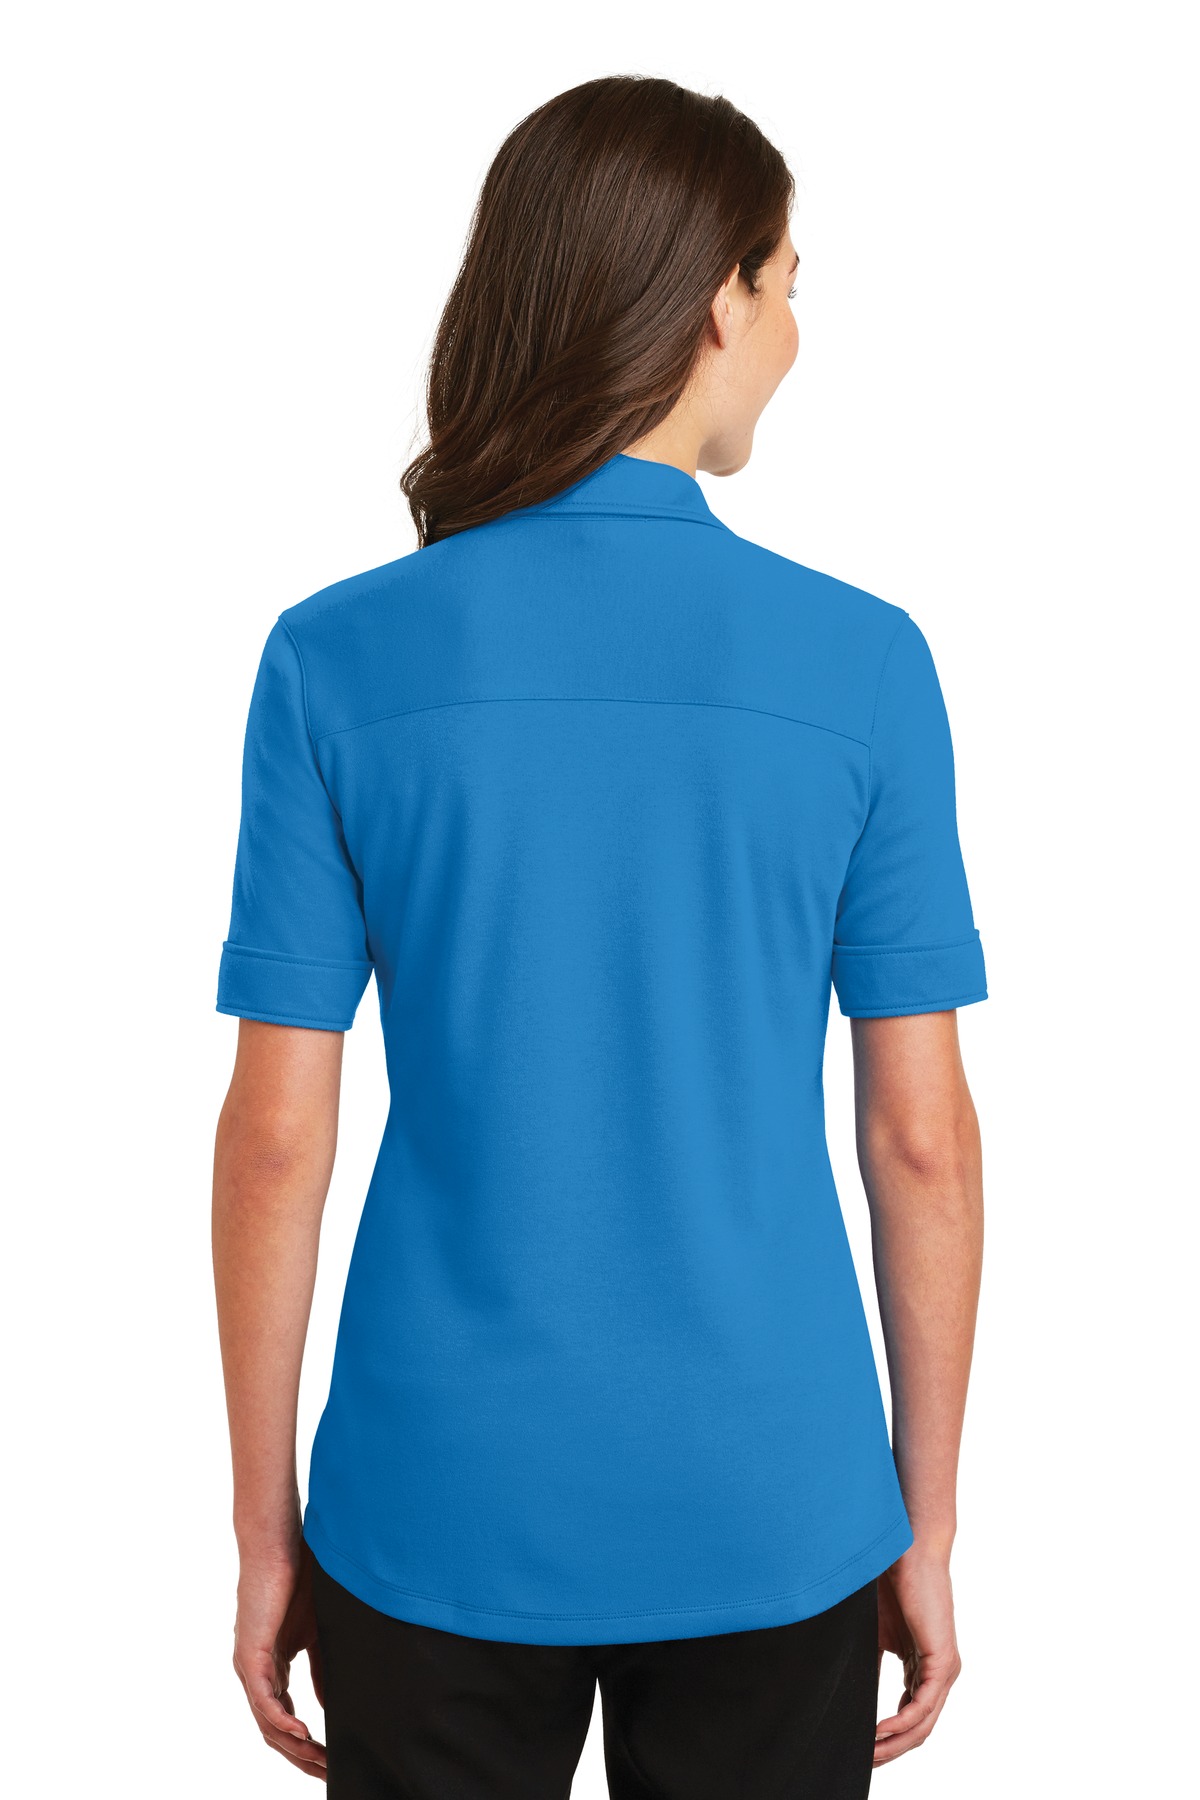 Port Authority Adult Female Women Plain Short Sleeves Polo Brilliant Blue Large - image 2 of 6